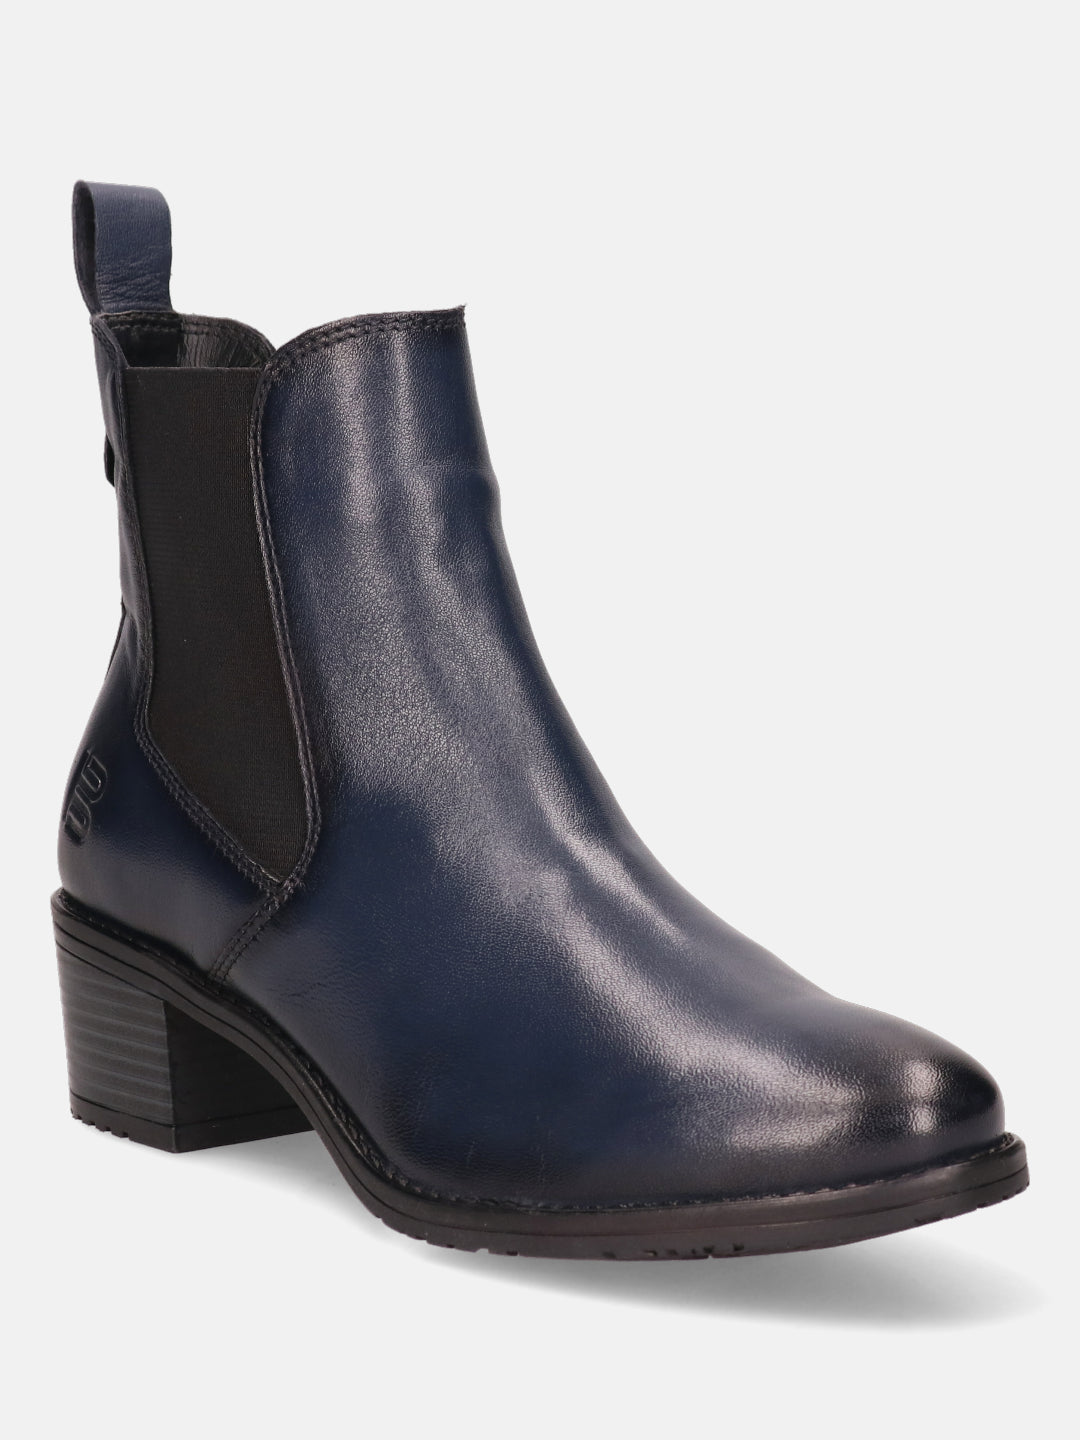 BAGATT Premium Leather Dark Blue Chelsea Boots